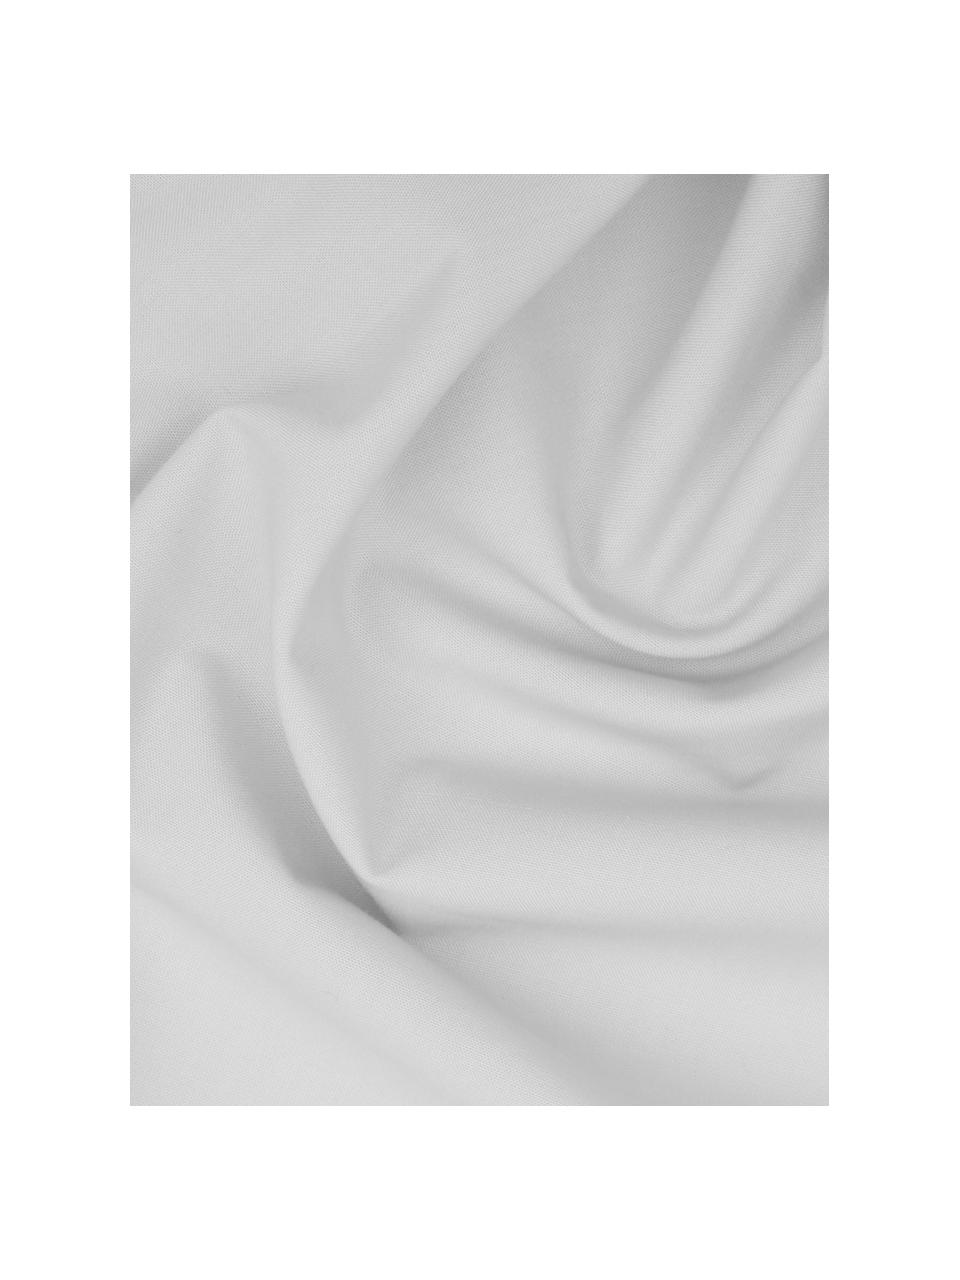 Taies d'oreiller en percale gris clair Elsie, 2 pièces, 65 x 65 cm, Gris clair, larg. 65 x long. 65 cm